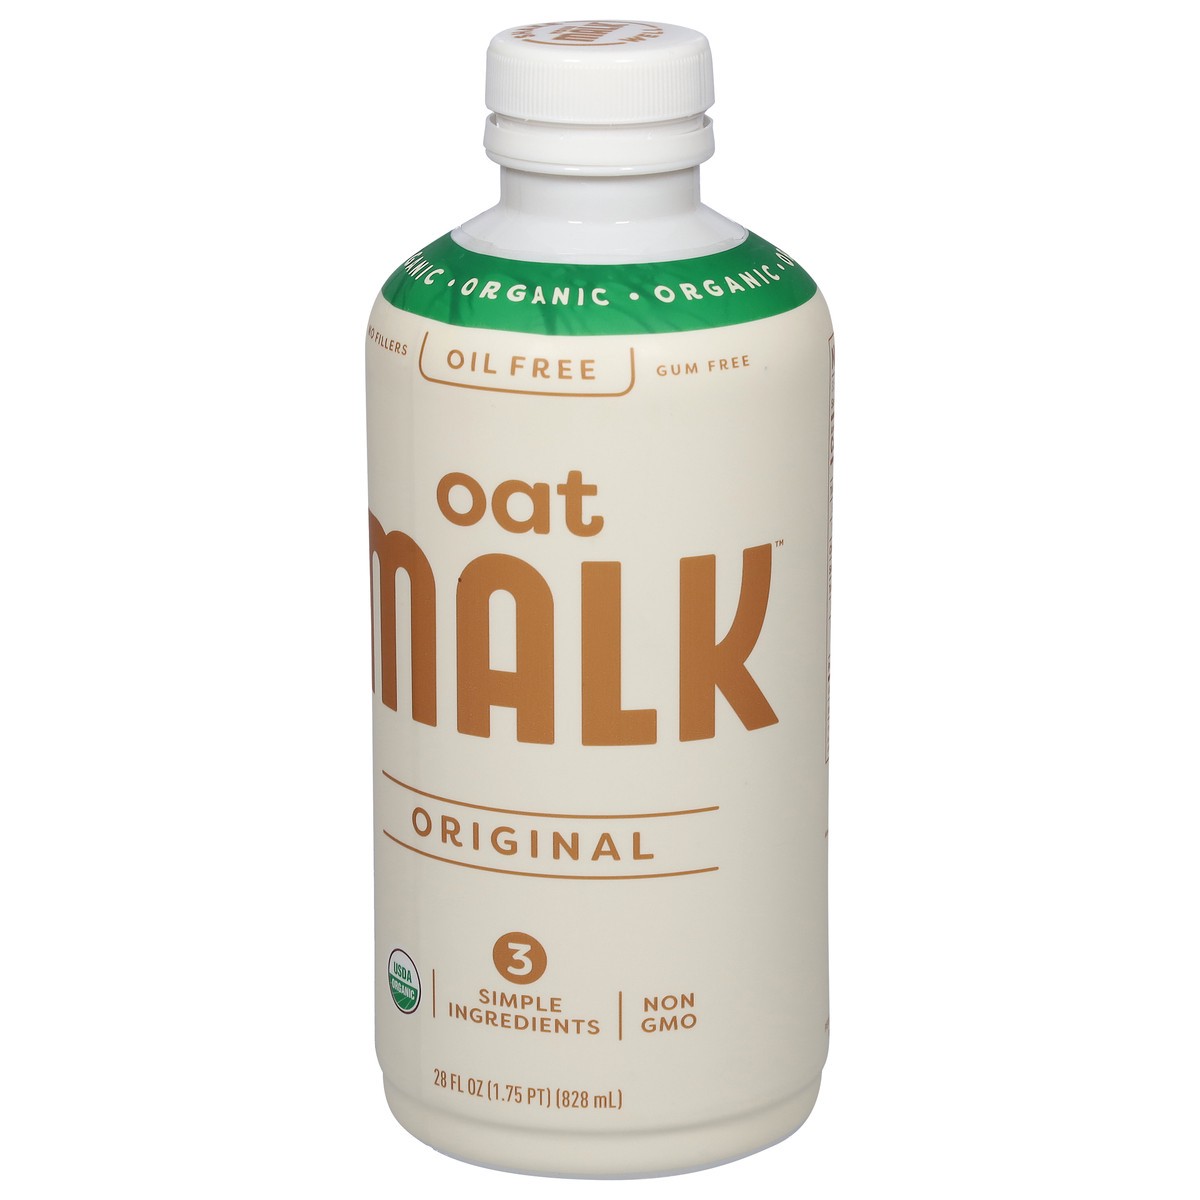 slide 2 of 11, Malk Organic Oil Free Original Oat Milk 28 fl oz, 28 fl oz